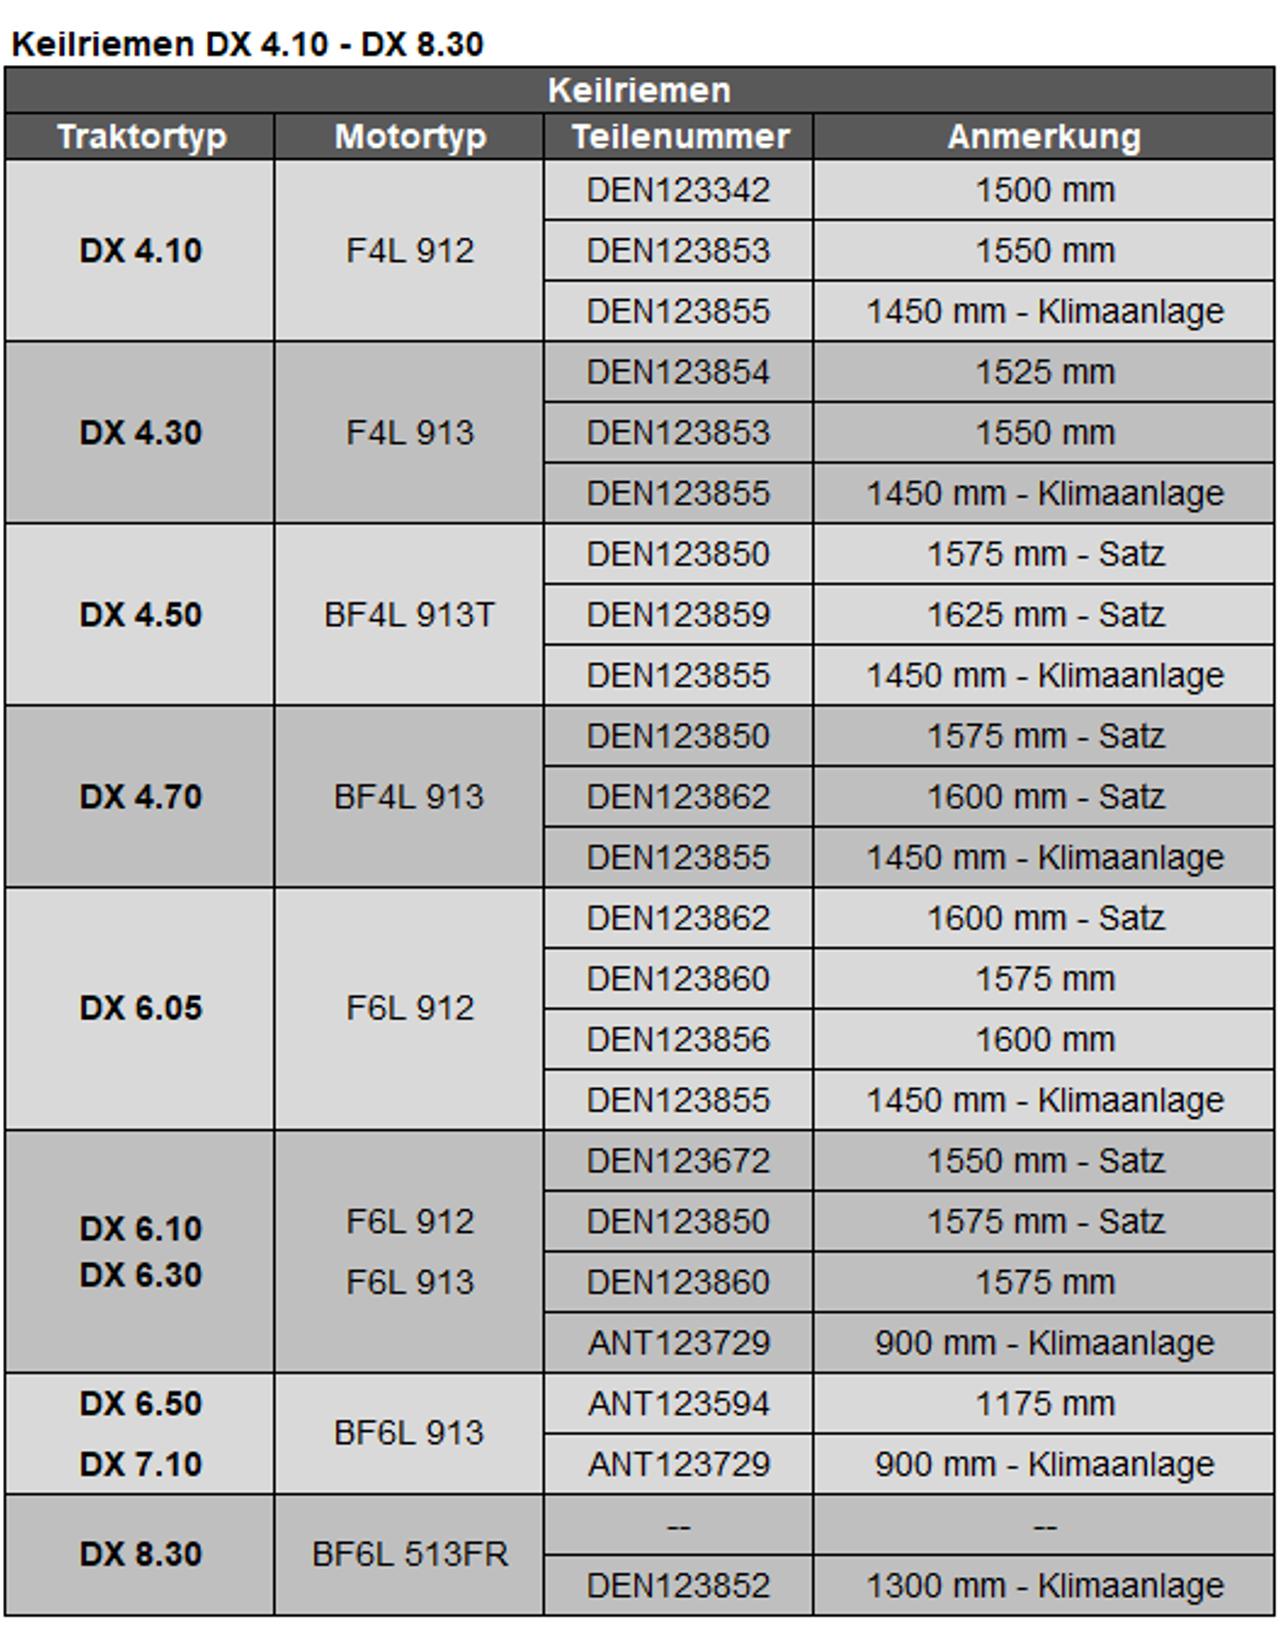 Keilriemen DX 4.10 - DX 8.30